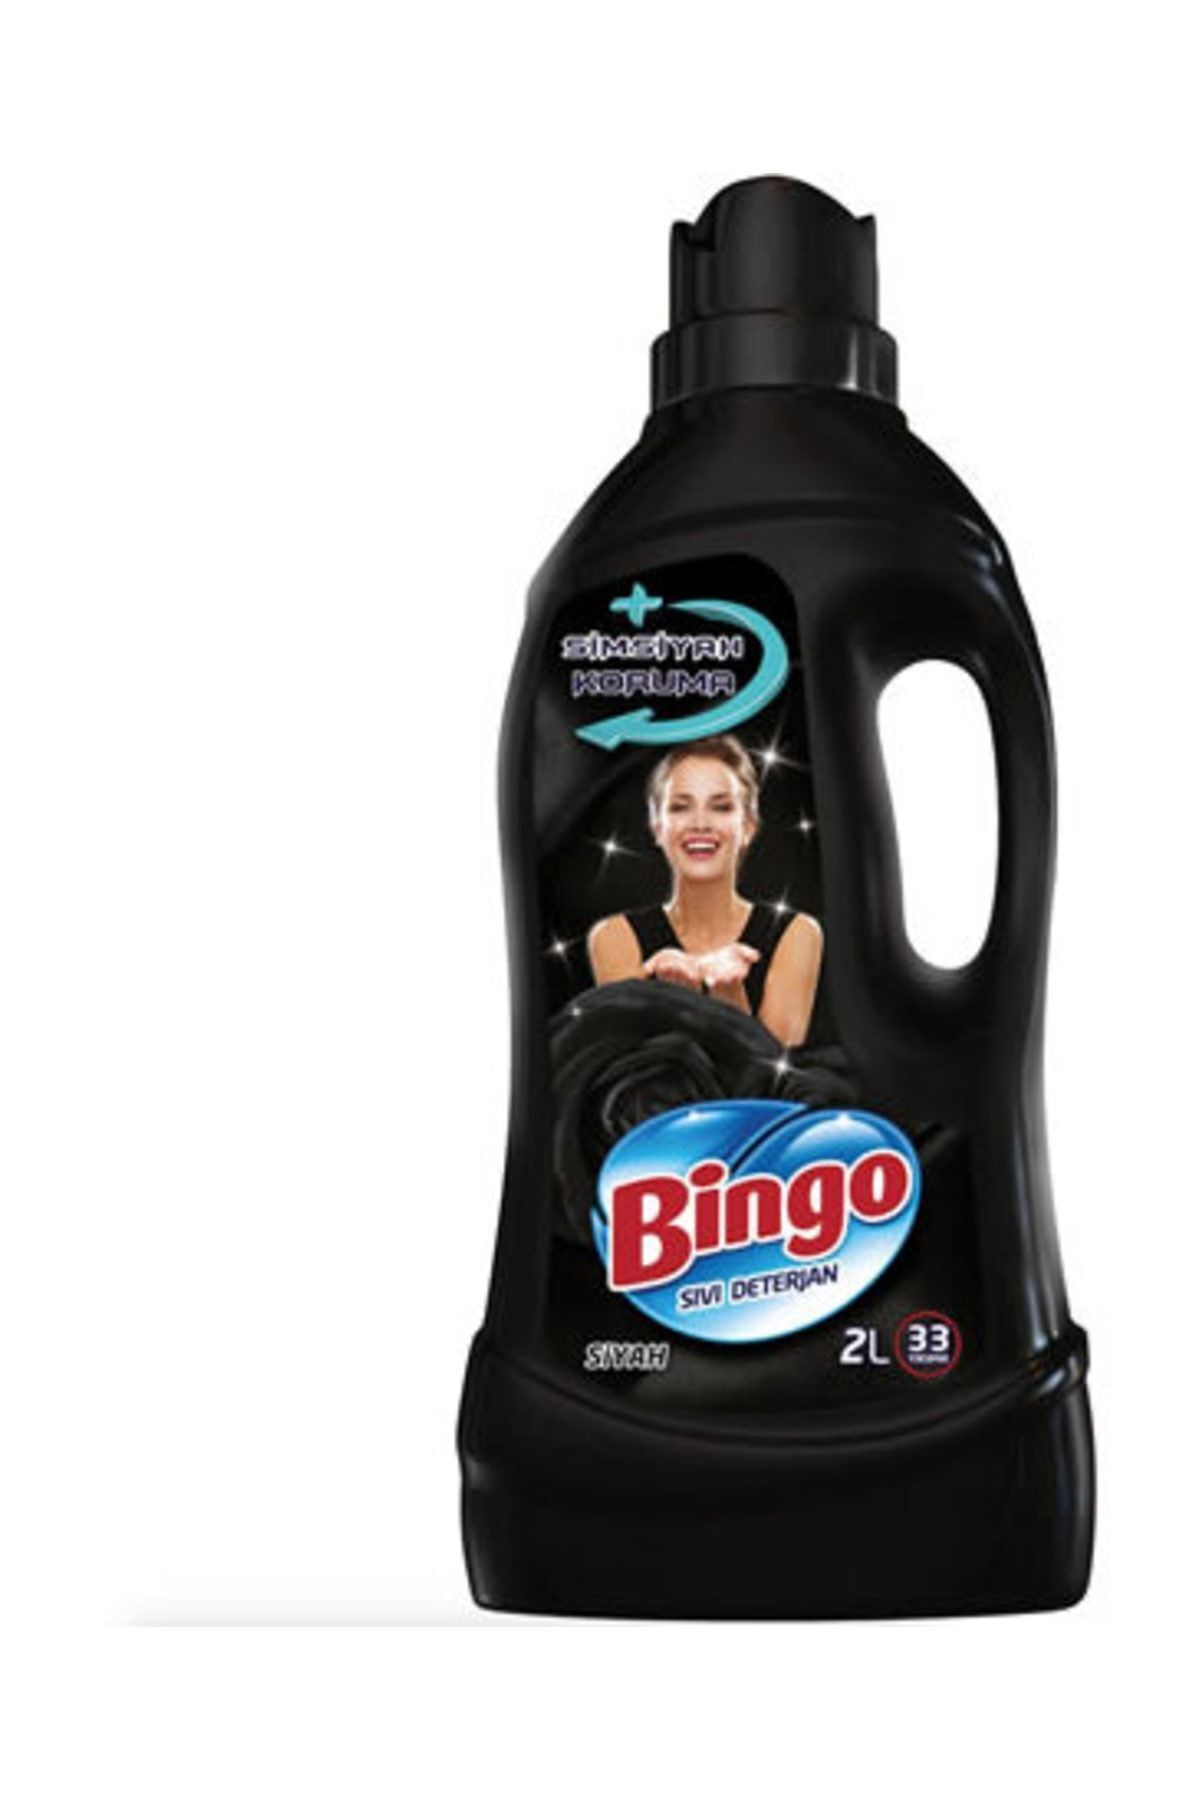 Bingo Matik Siyahlara Özel Bakım Serisi Sıvı Çamaşır Deterjanı 2 L 33 Yıkama